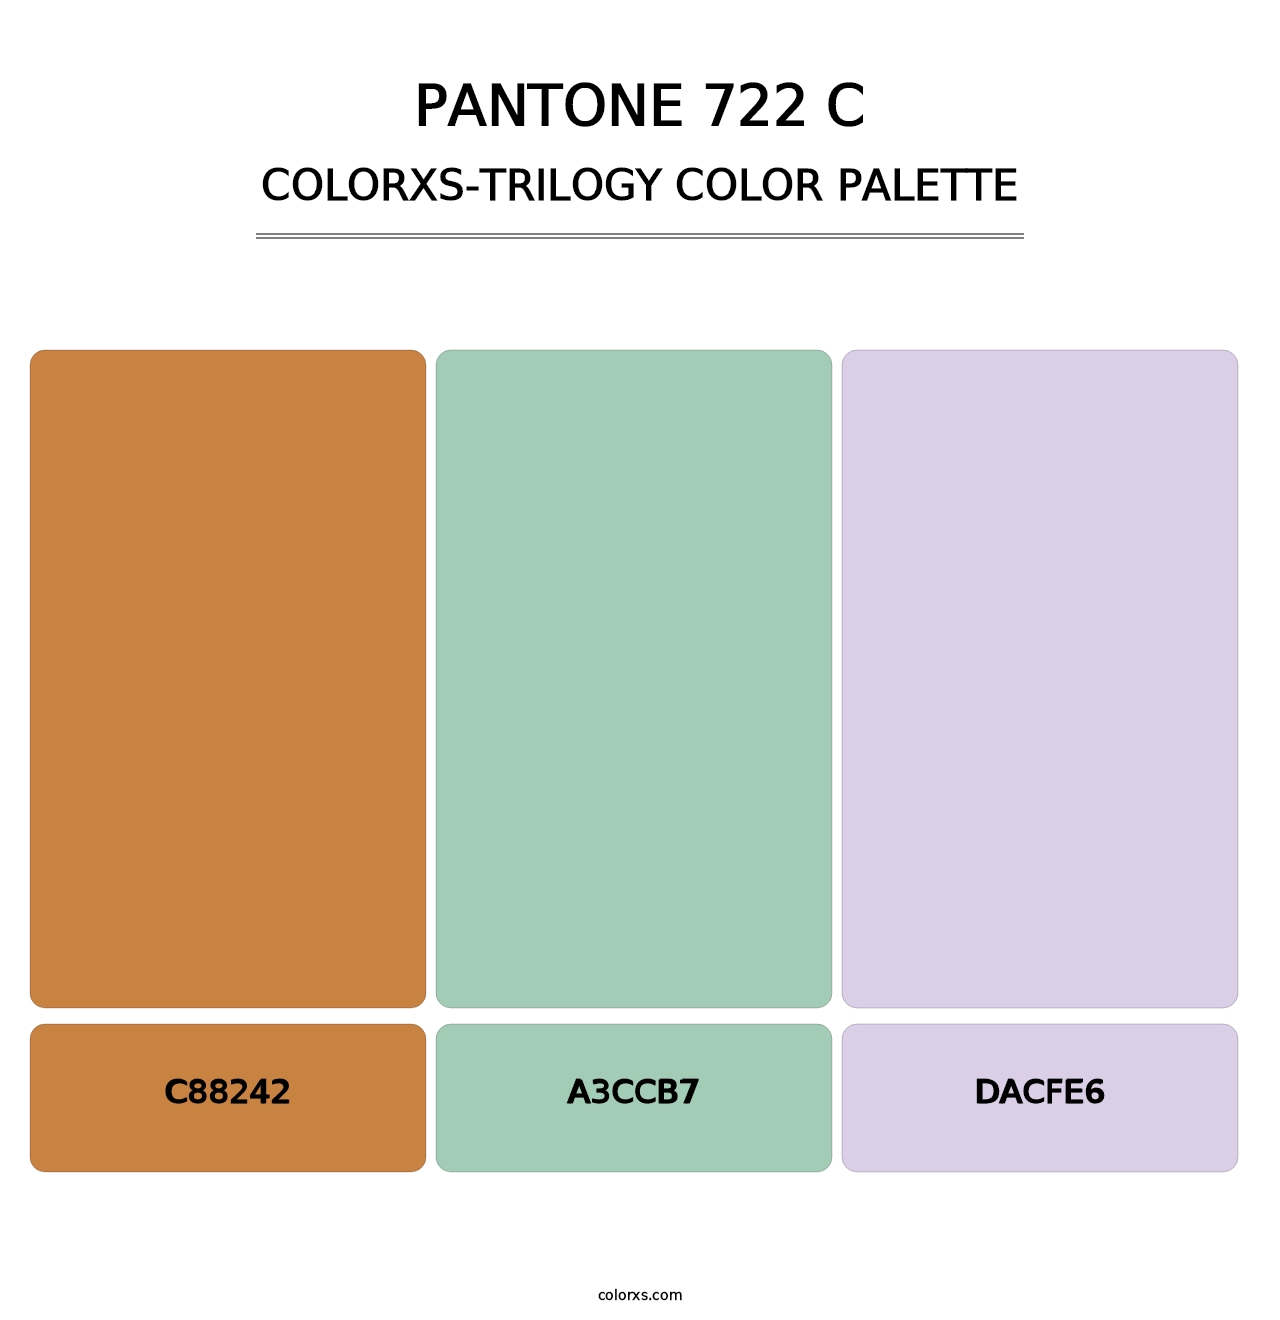 PANTONE 722 C - Colorxs Trilogy Palette